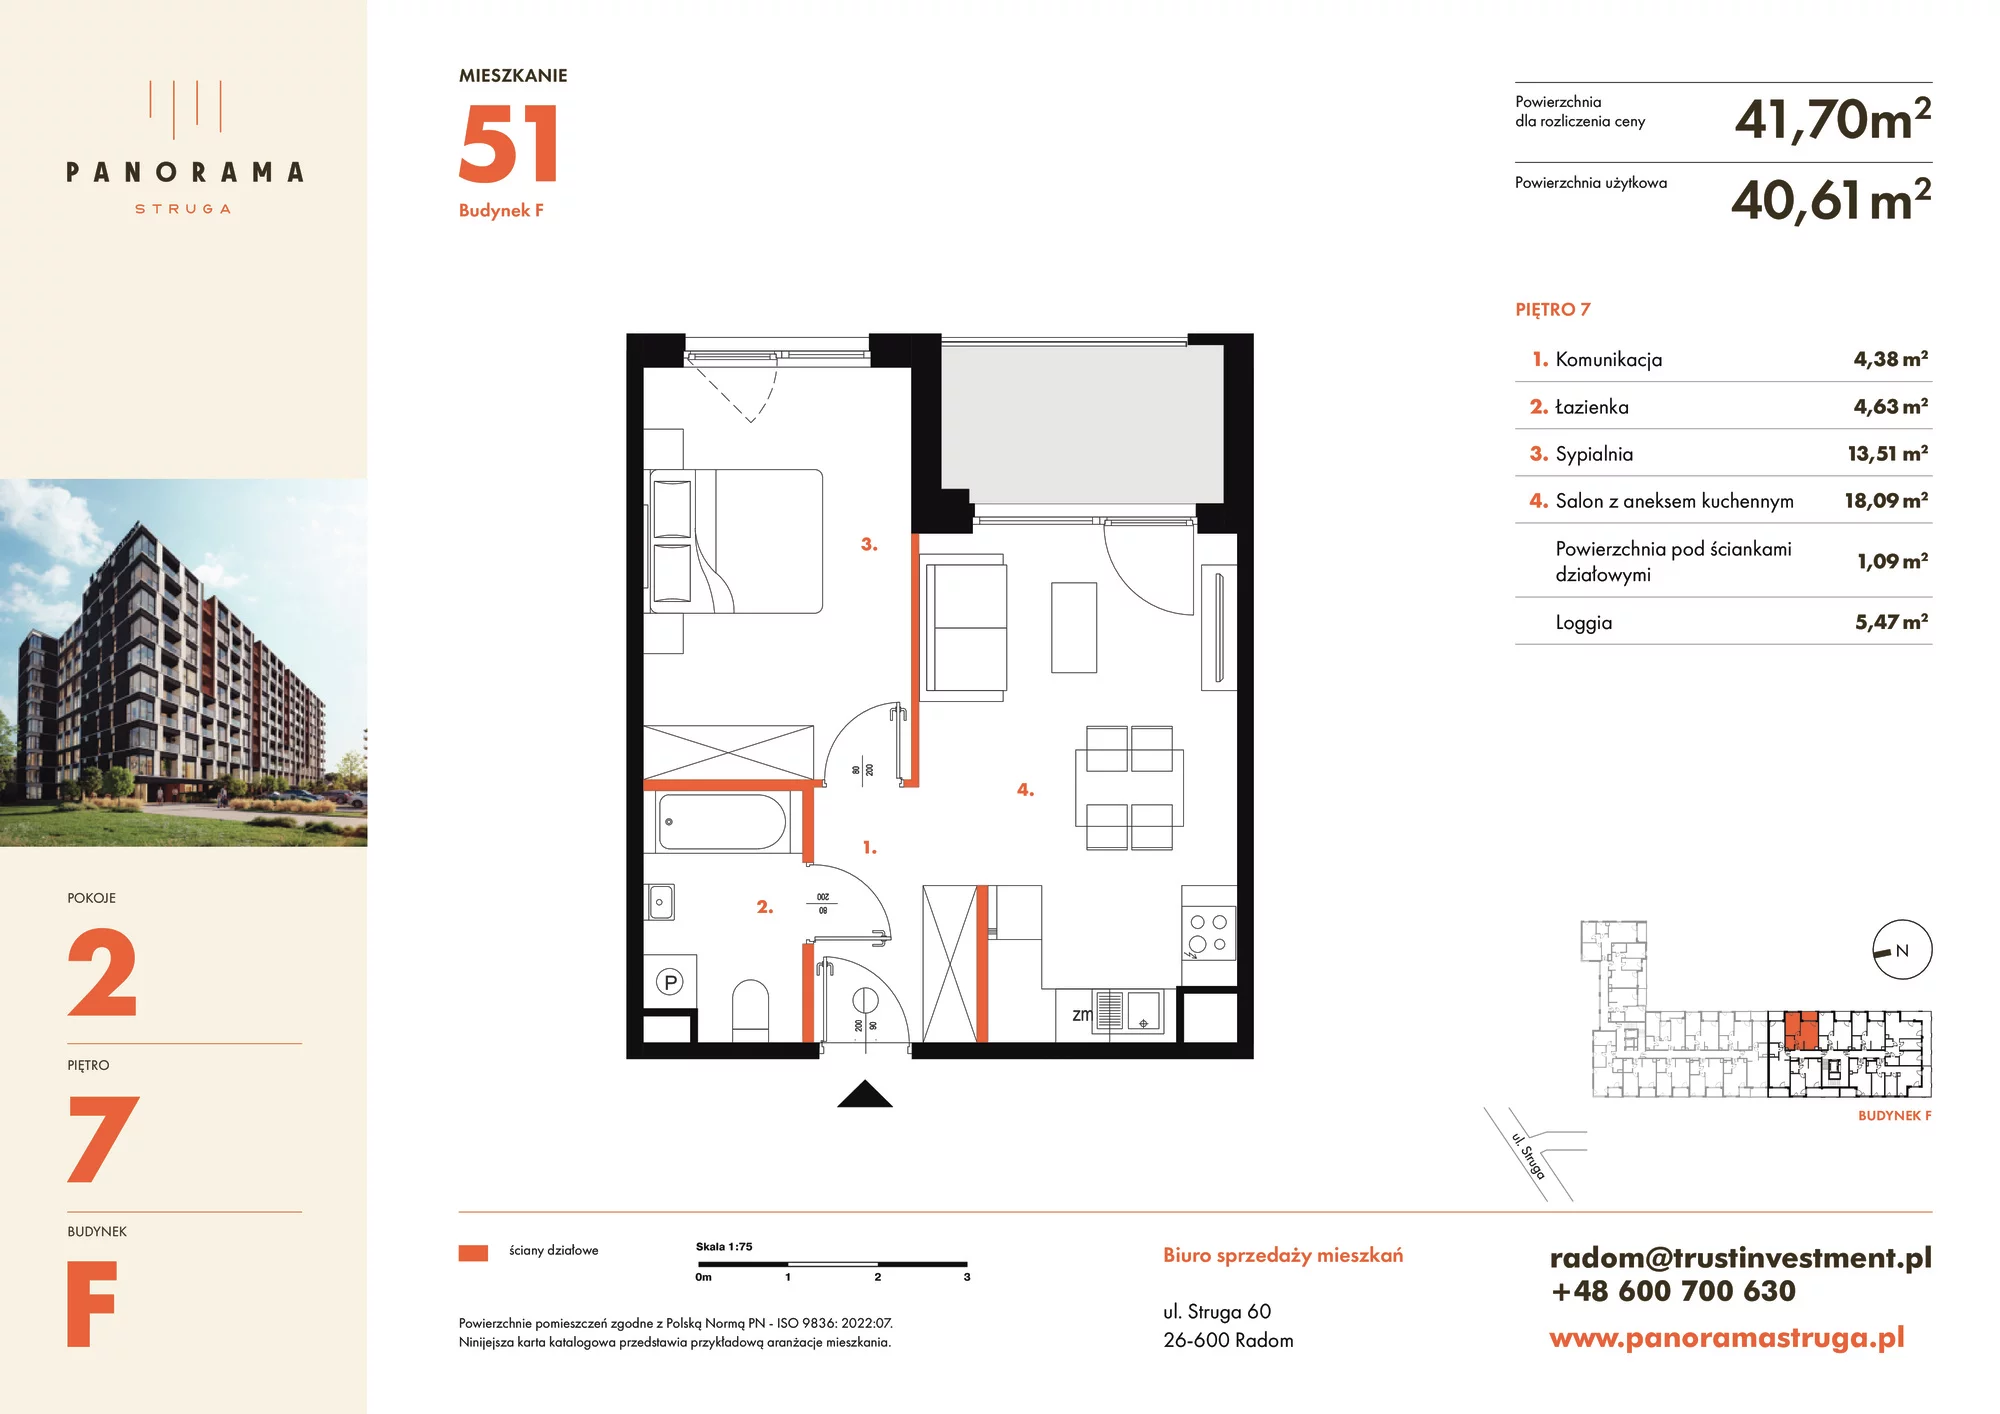 Mieszkanie 41,70 m², piętro 7, oferta nr F51, Panorama Struga, Radom, Śródmieście, ul. Andrzeja Struga 60